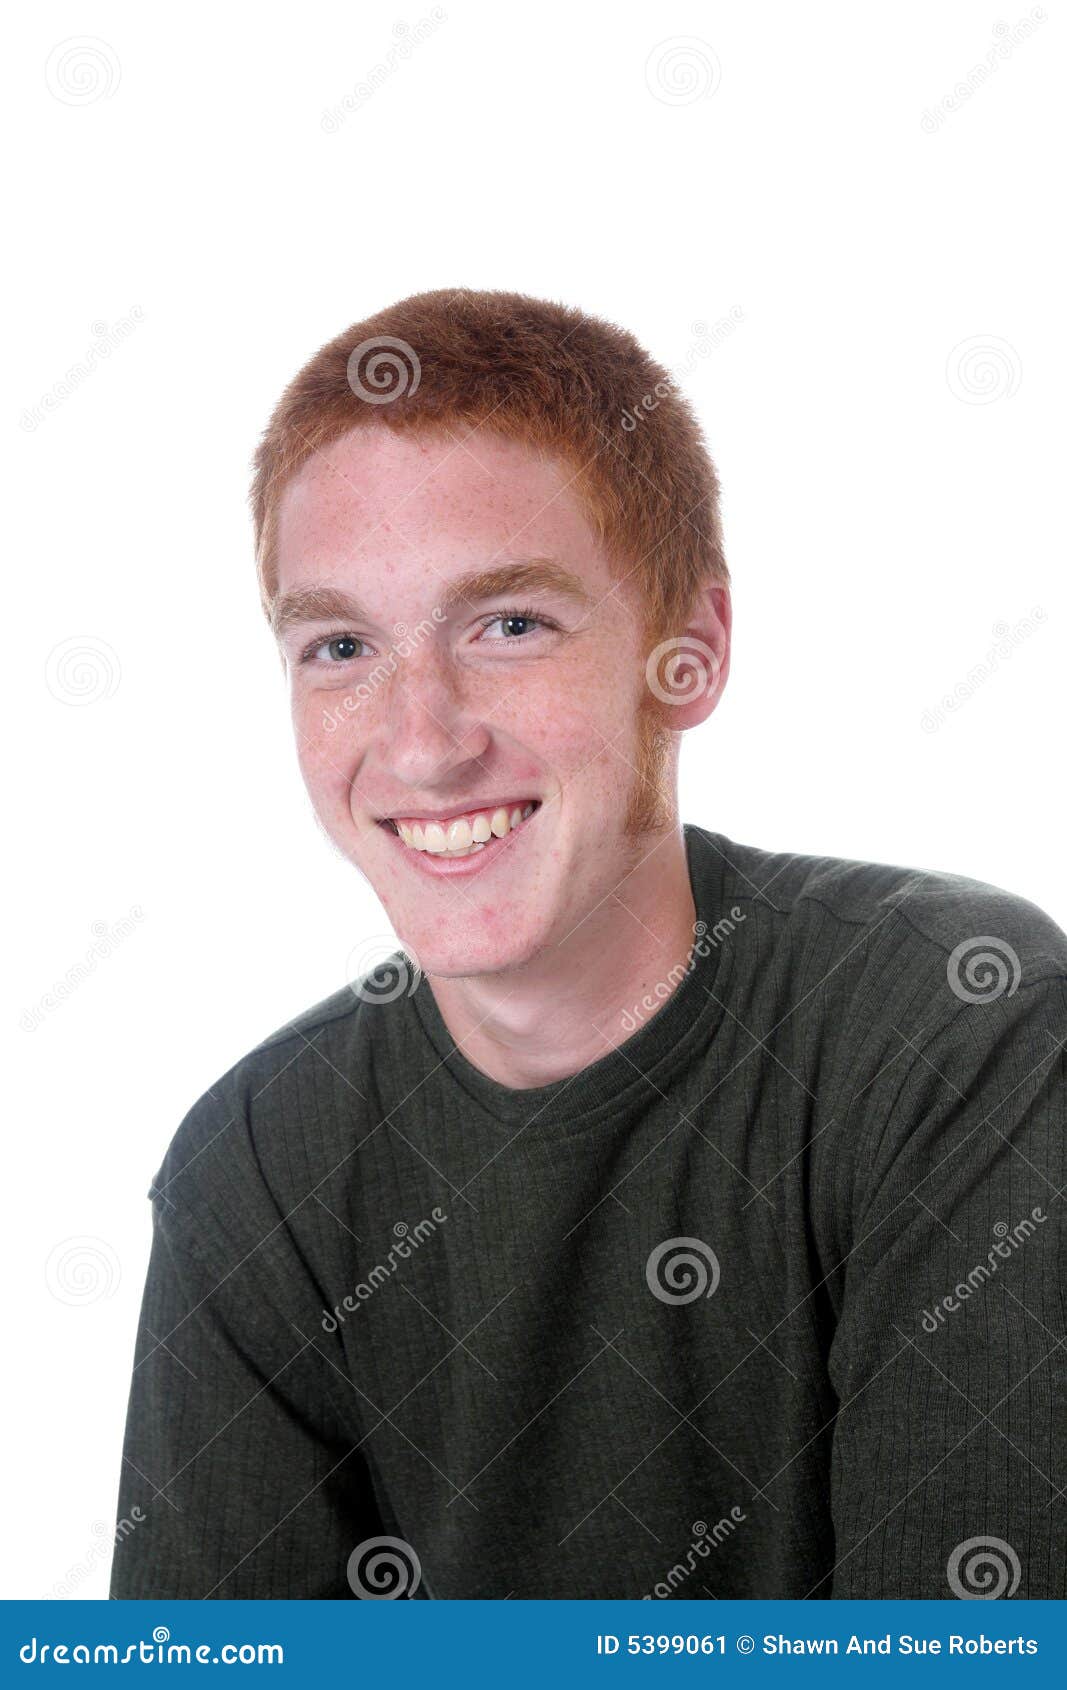 Pojken får fräknar haired rött leende. Haired trevligt rött sideburnsleende för attraktiv pojke